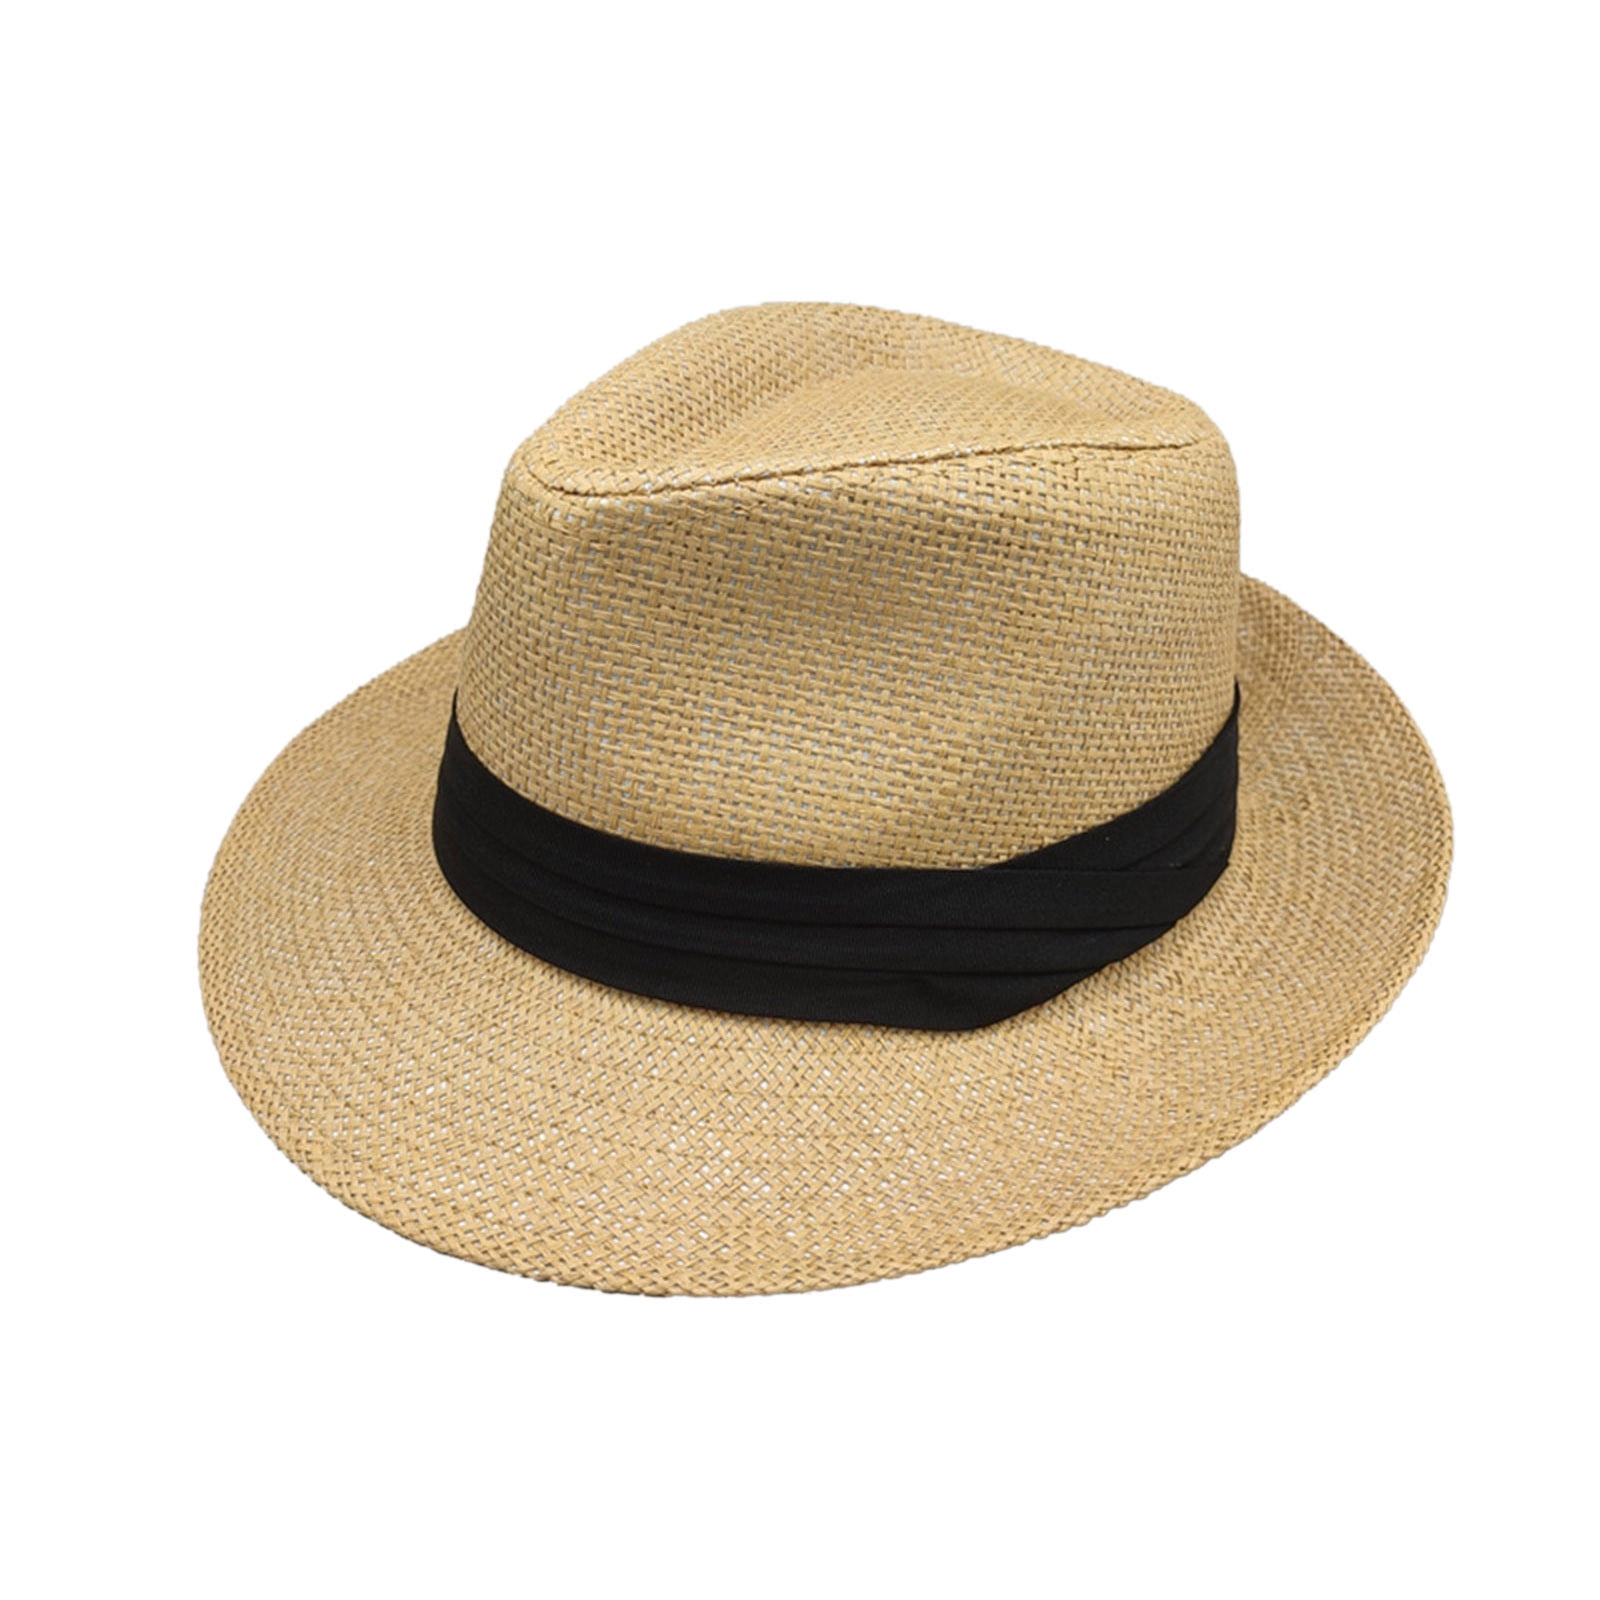 Unisex Men Women Panama Wide Brim Straw Hats Aldult Jazz Straw Hat